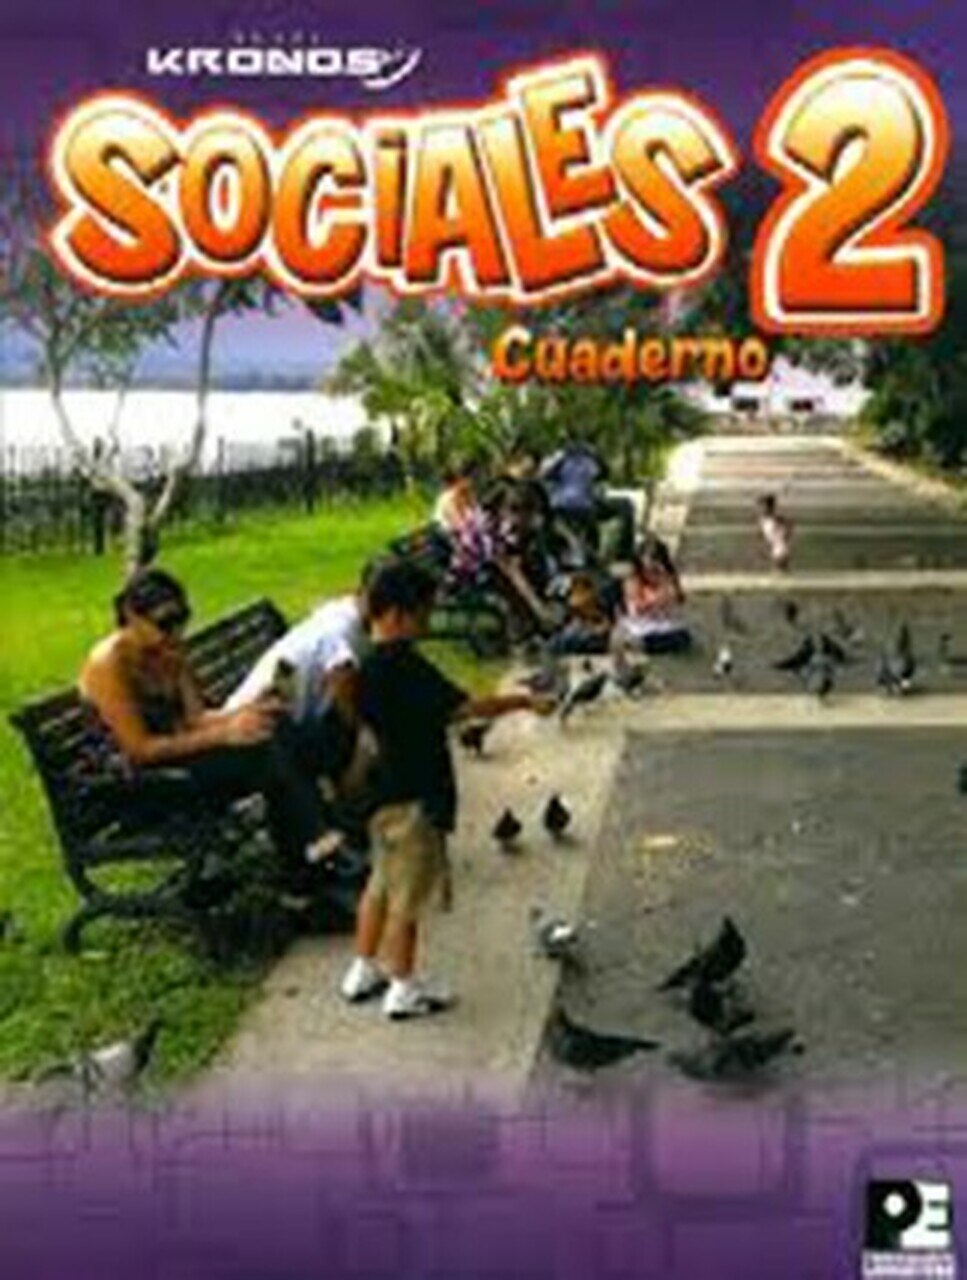 Kronos Sociales 2 Cuaderno